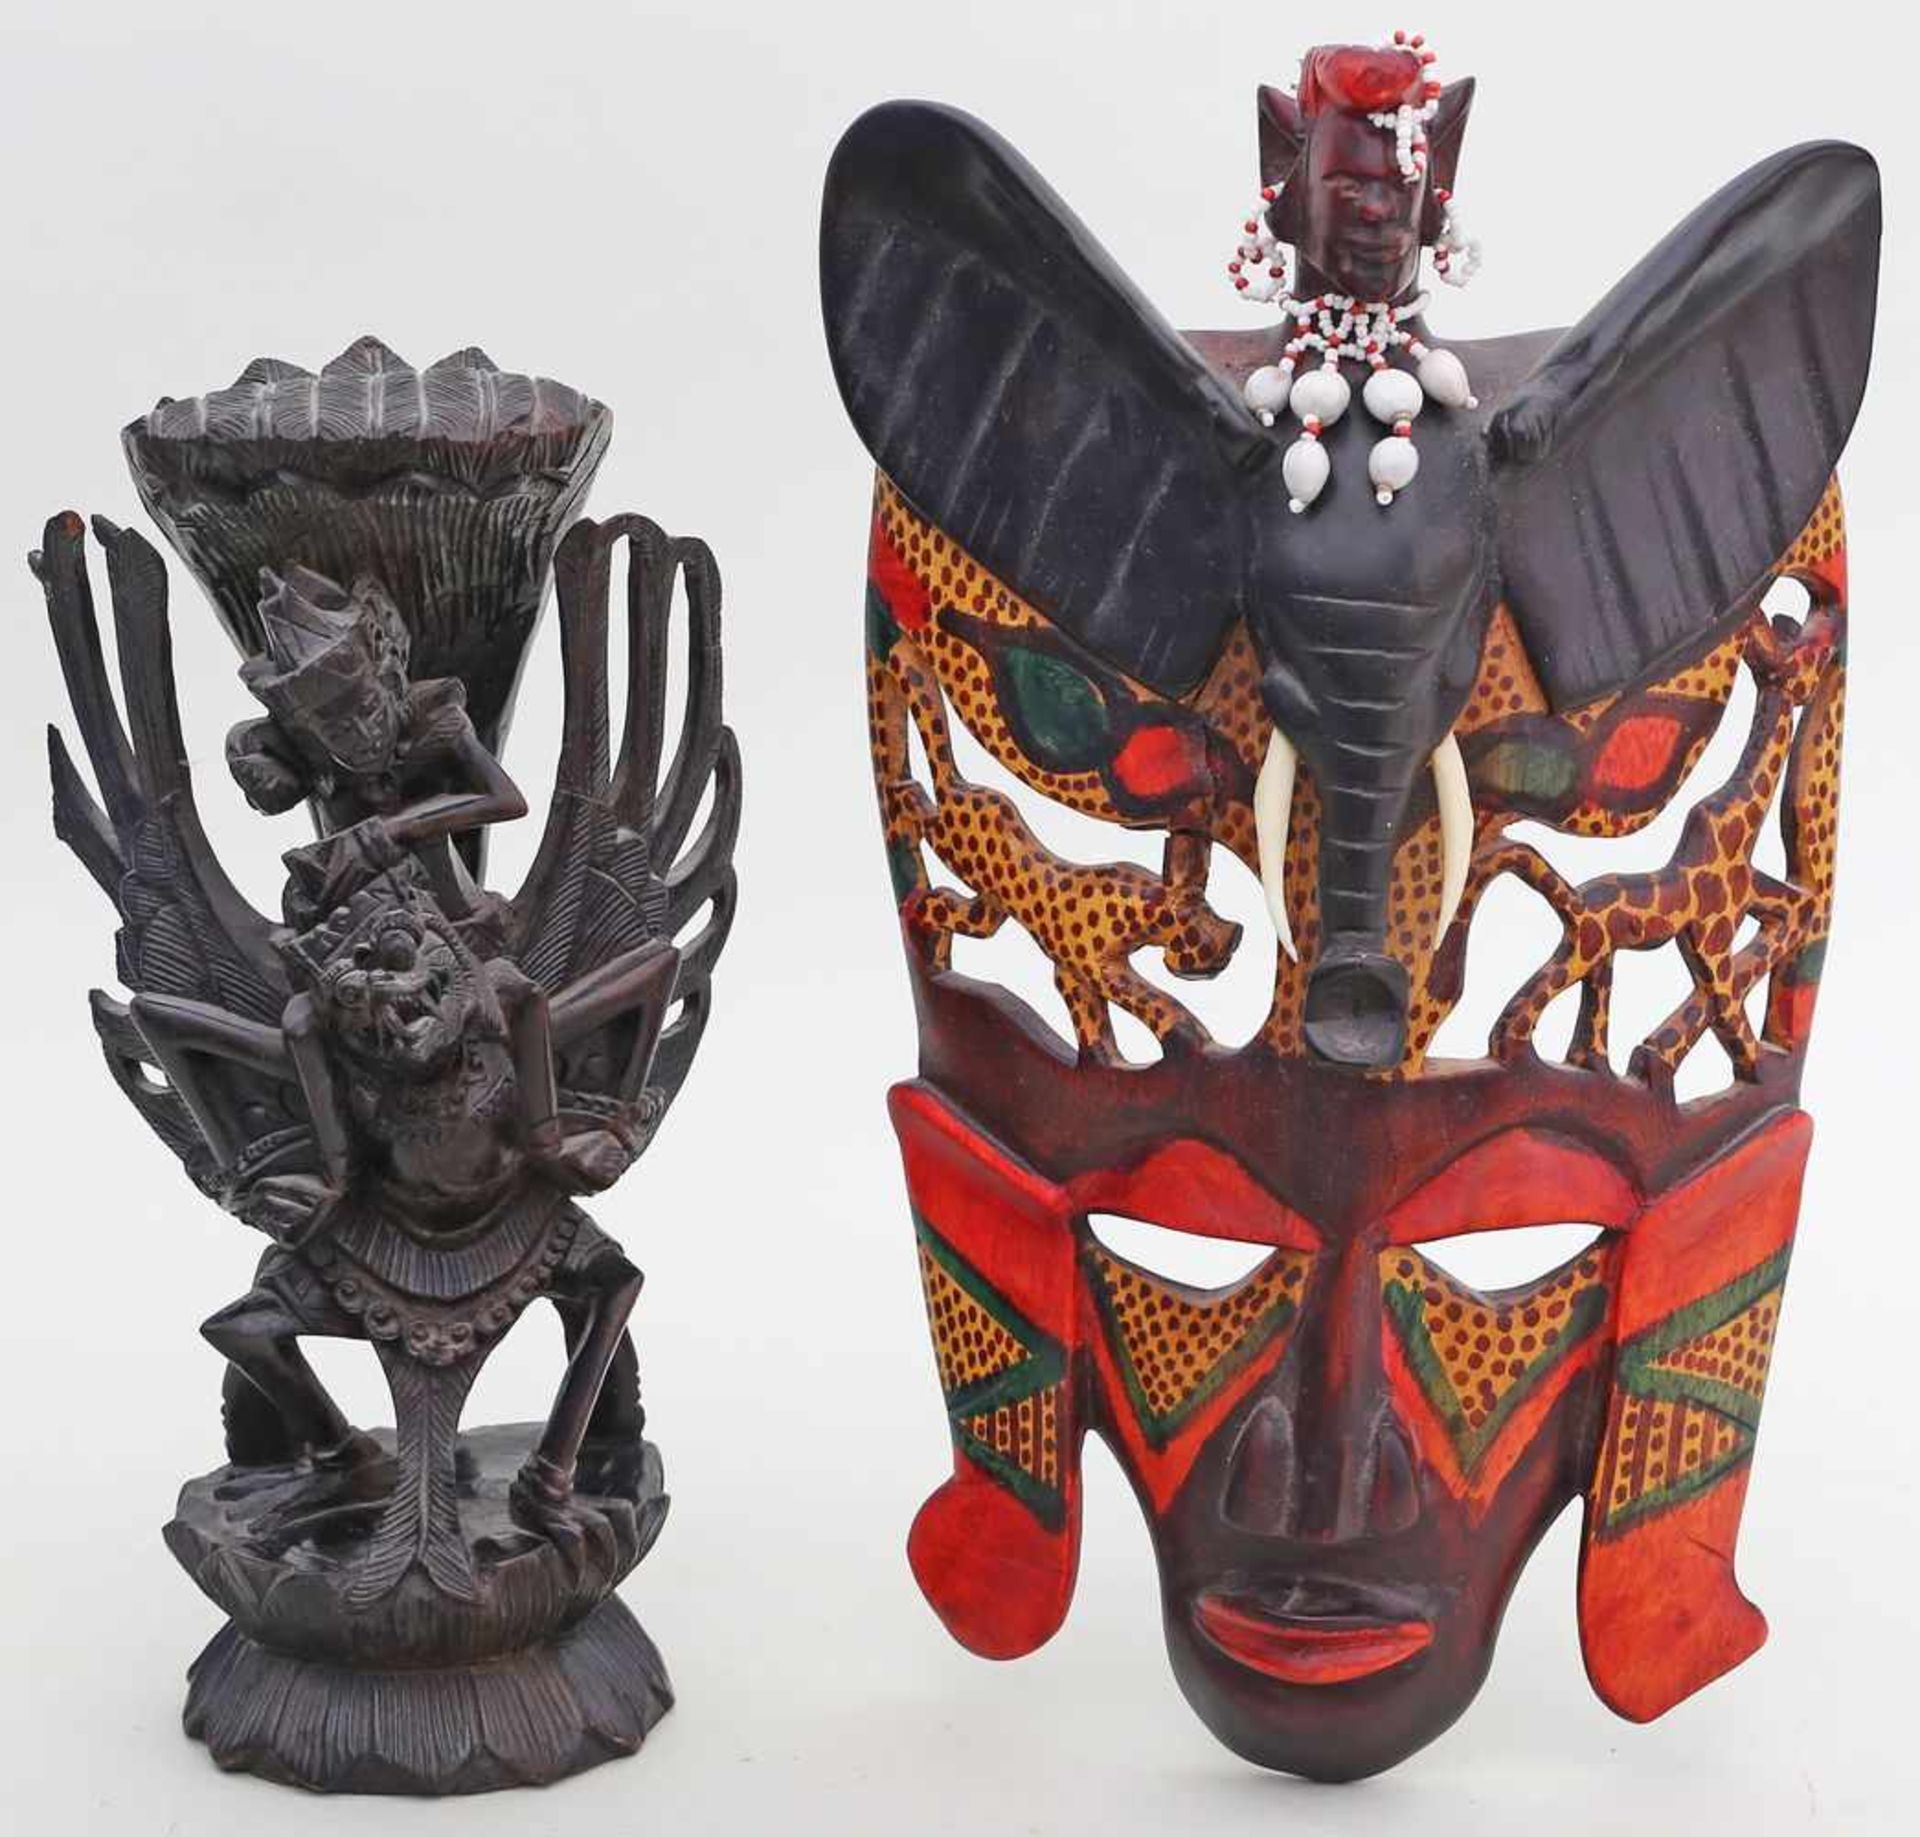 Maske und Skulptur.Holz, geschnitzt. Skulptur in Form einer auf Garuda reitenden Gottheit, Maske mit